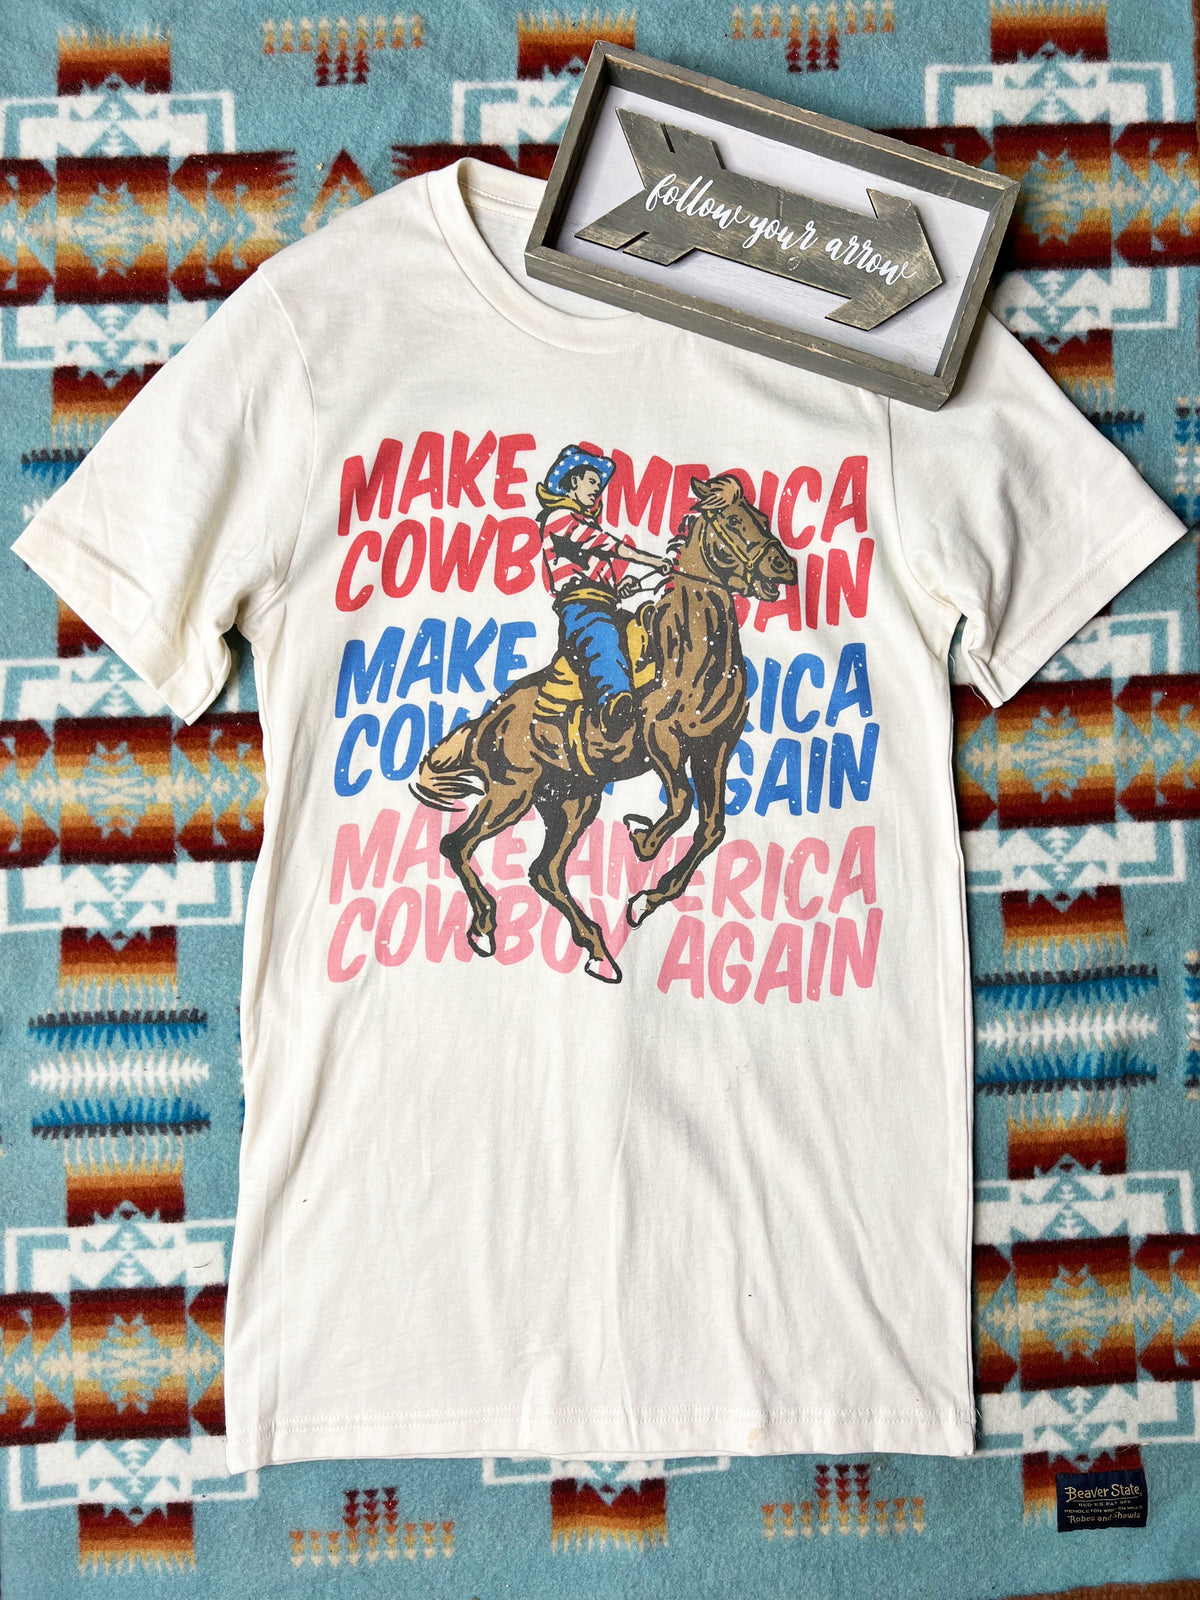 Make America Cowboy Again Tee